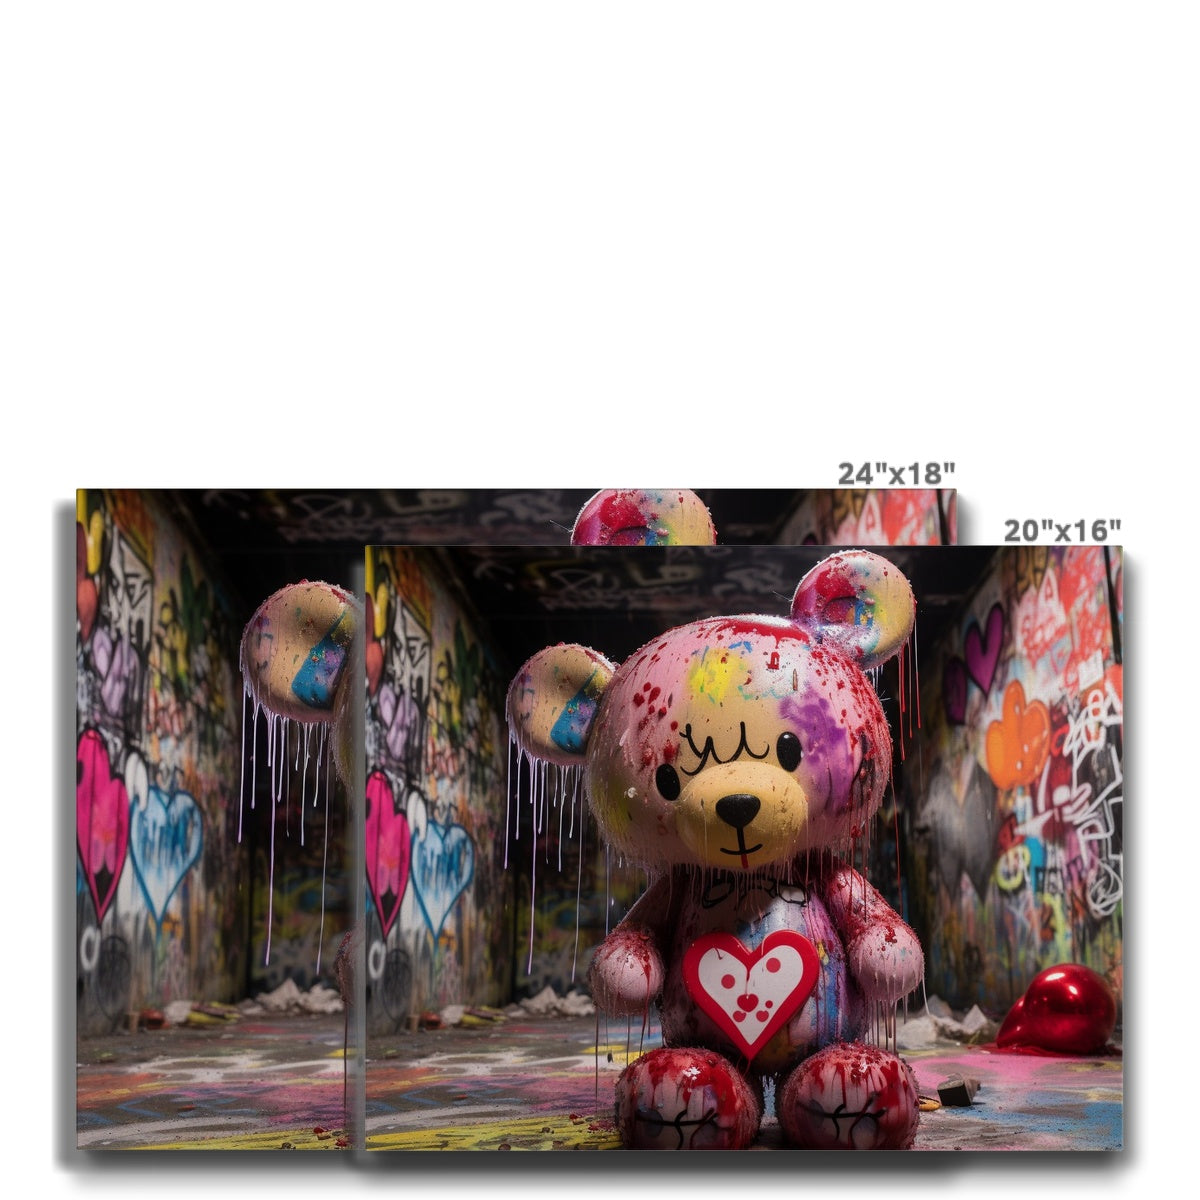 Teddy Got Drip: Limited Edition Canvas